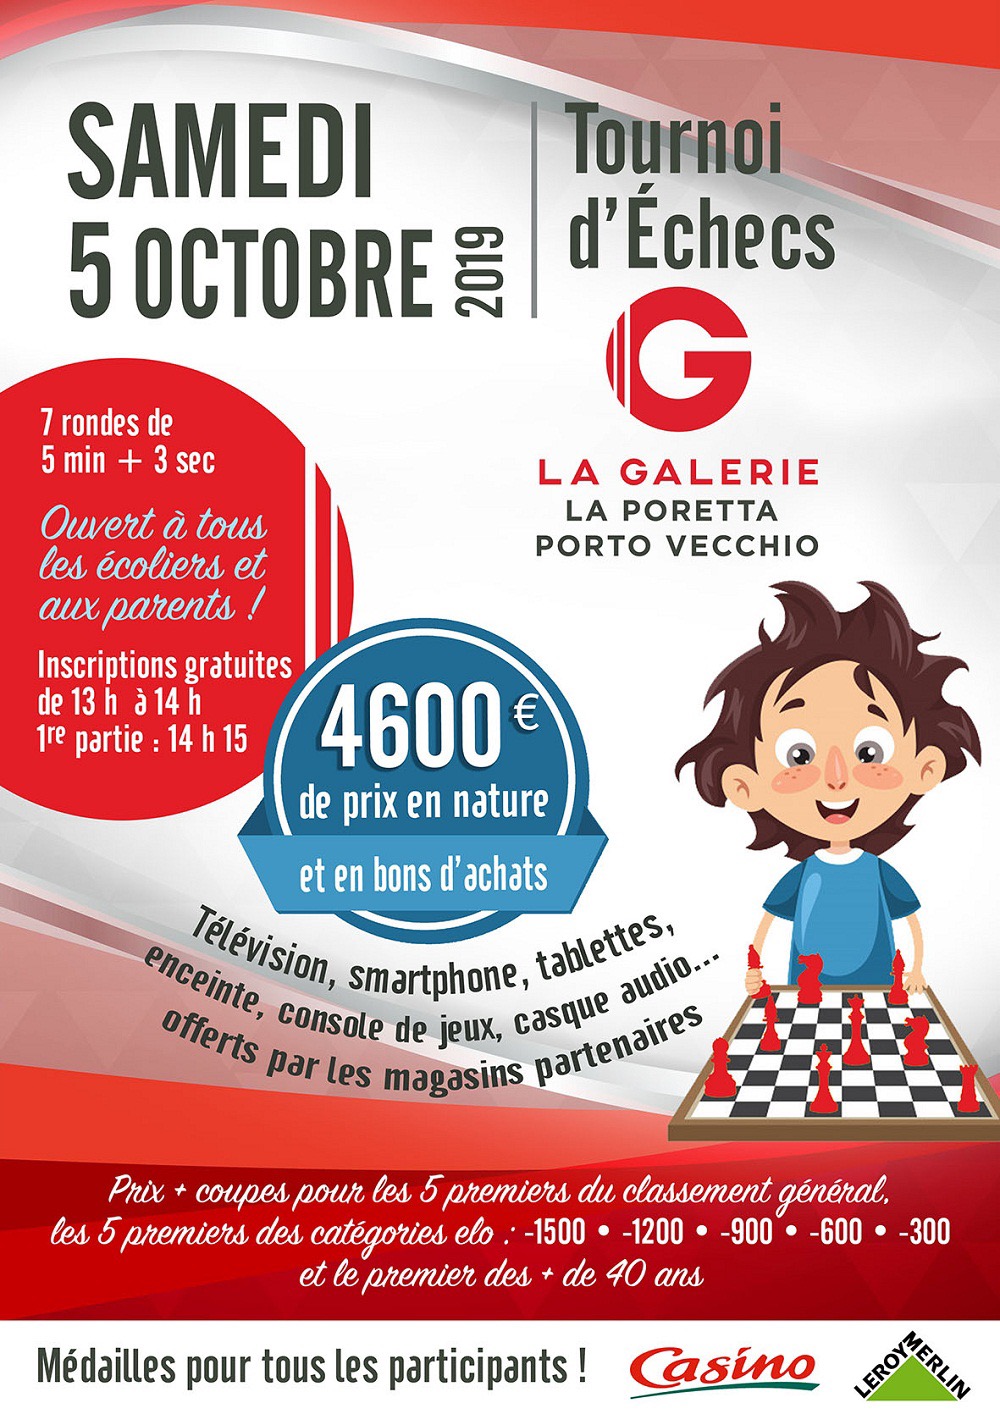 Porto Vecchio : Grand tournoi d'échecs au centre commercial La Galerie - Géant  5 octobre 2019